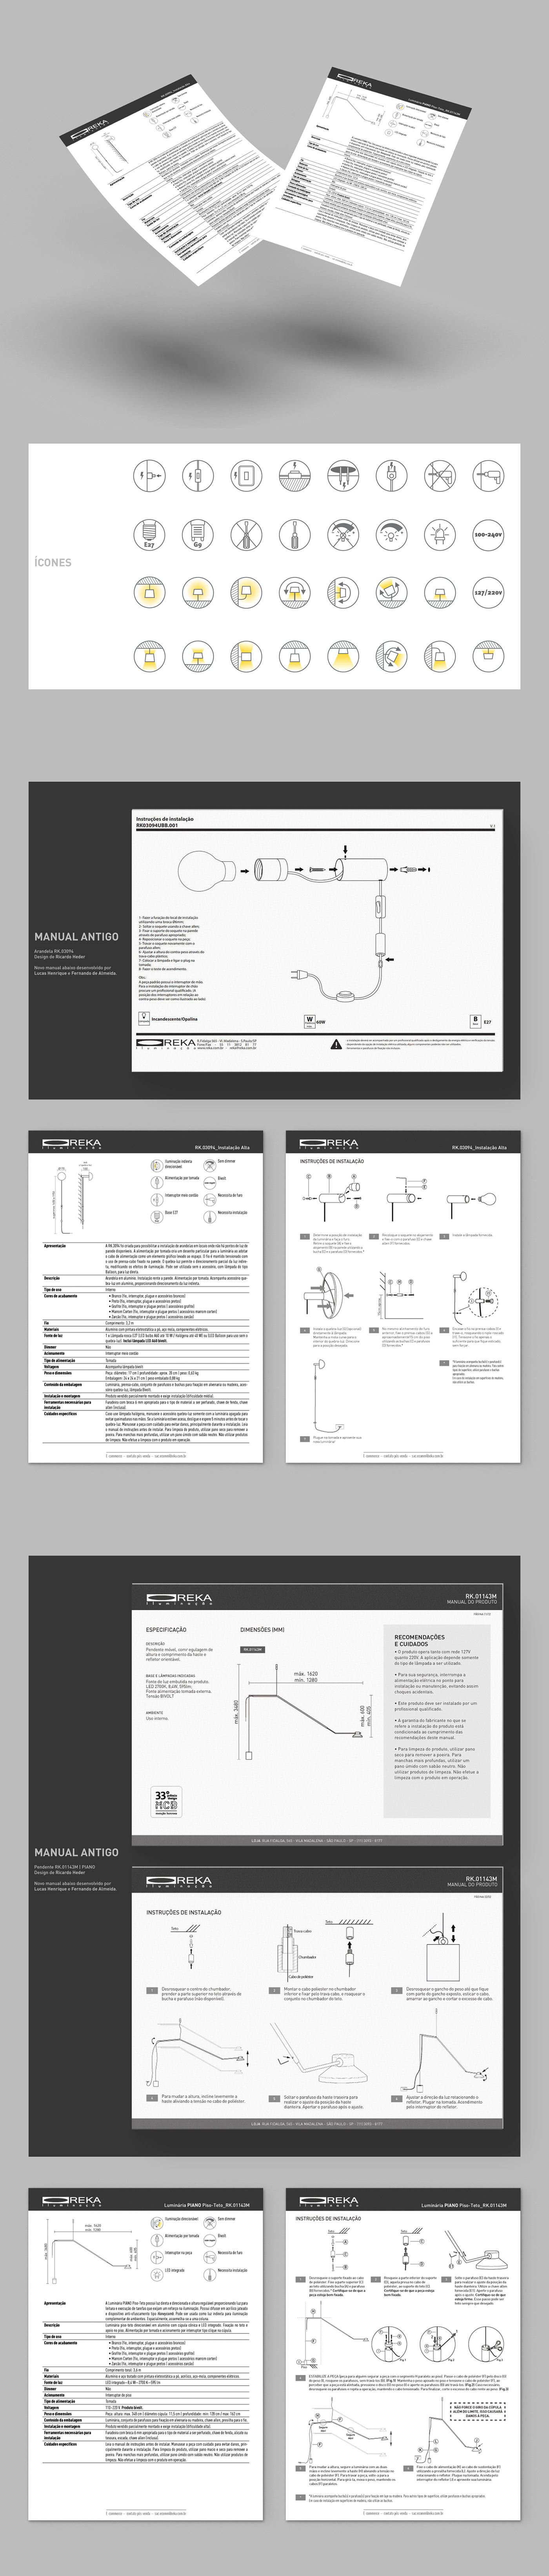 design de produto diagramação iluminação Ilustração instructions Luminarias manual de instrução product design  user guide manual